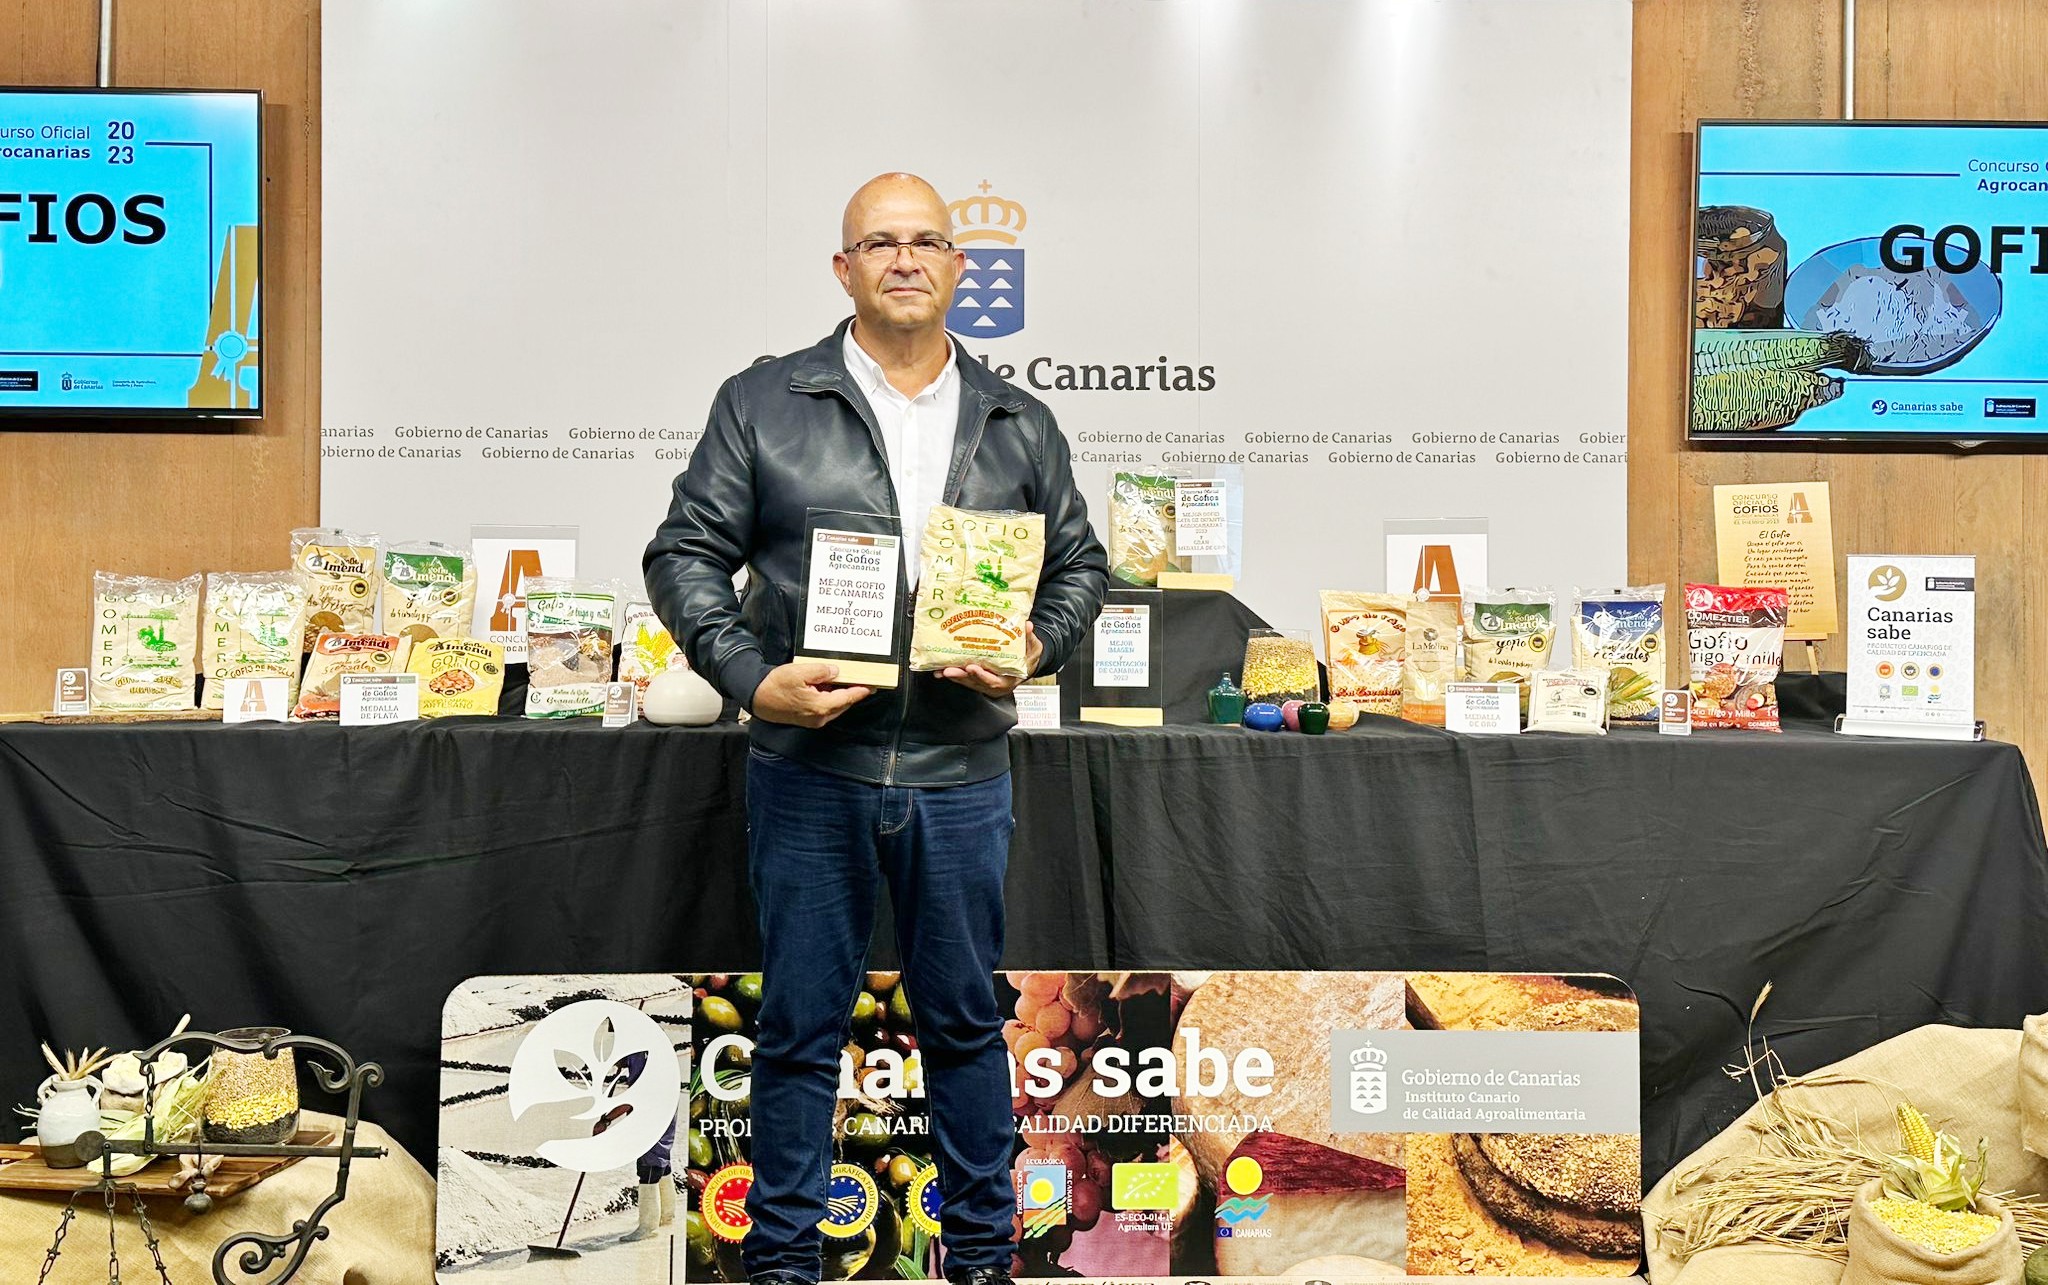 Gofio Gomero de millo, el mejor de Canarias según el jurado del Concurso Agrocanarias 2023